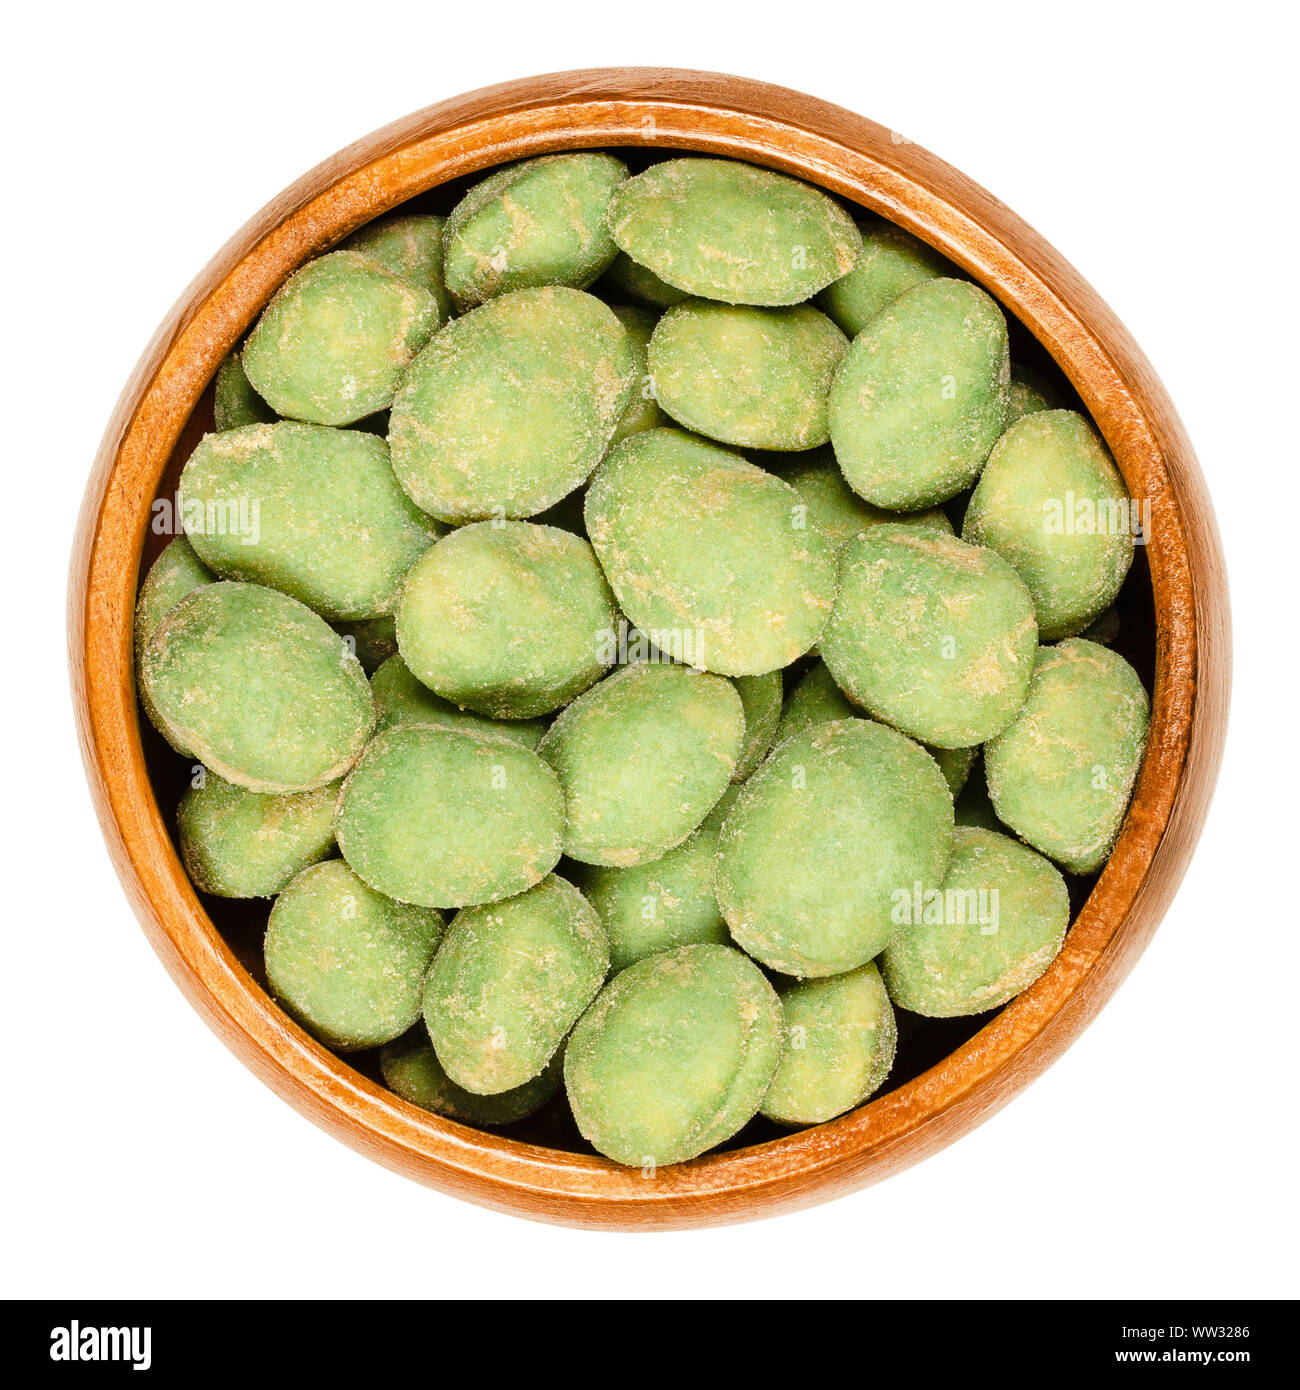 Wasabi peanuts in ciotola di legno su sfondo bianco. Colore verde dado piccante snack. Arachidi in impasto di riso, rivestite con super hot wasabi in polvere. Foto Stock